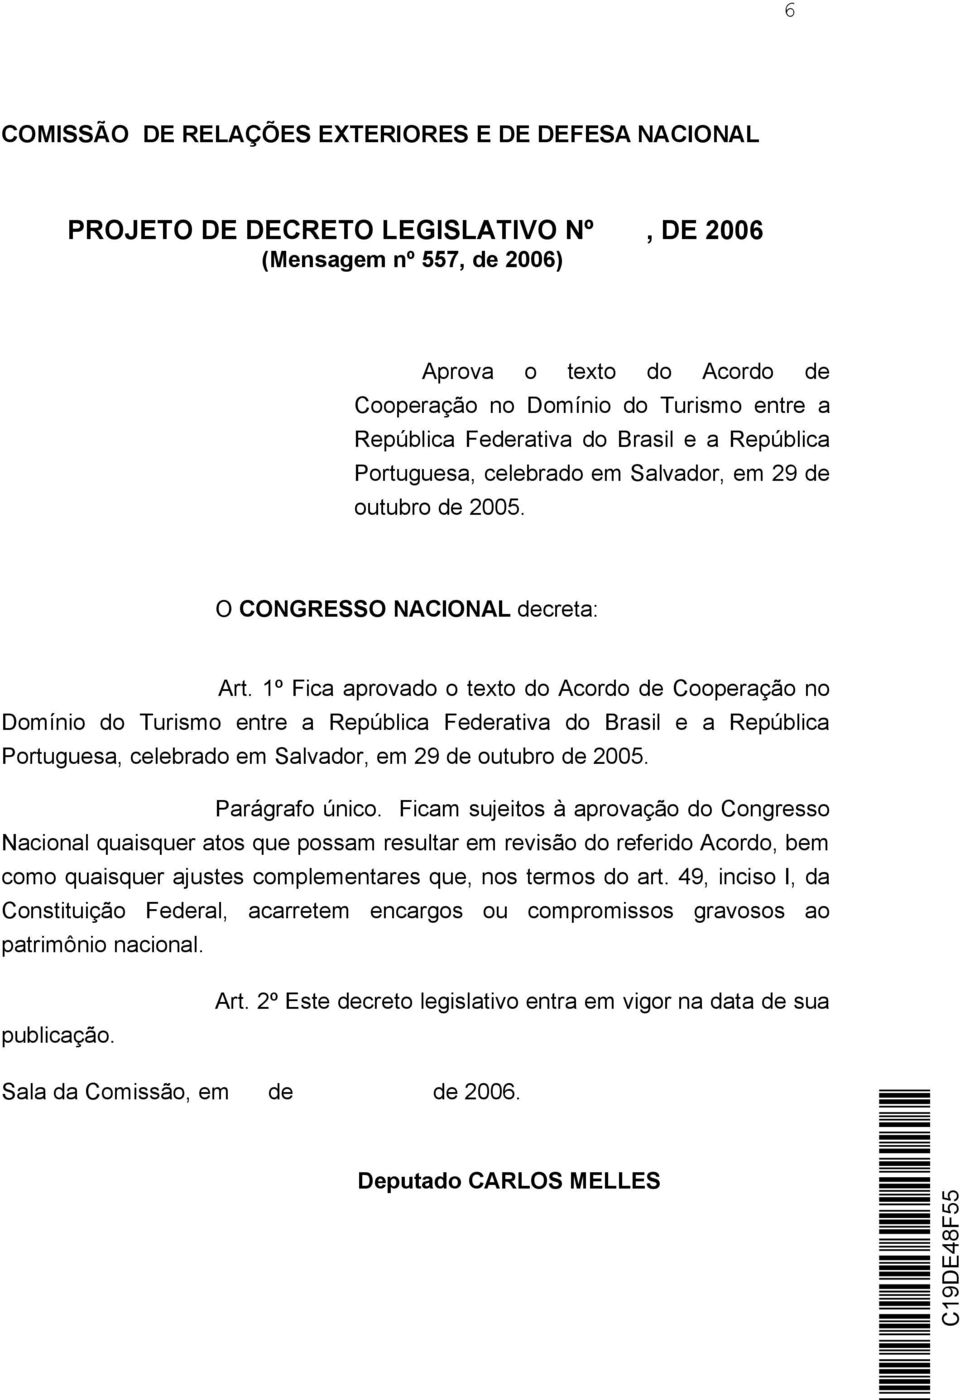 1º Fica aprovado o texto do Acordo de Cooperação no Domínio do Turismo entre a República Federativa do Brasil e a República Portuguesa, celebrado em Salvador, em 29 de outubro de 2005.